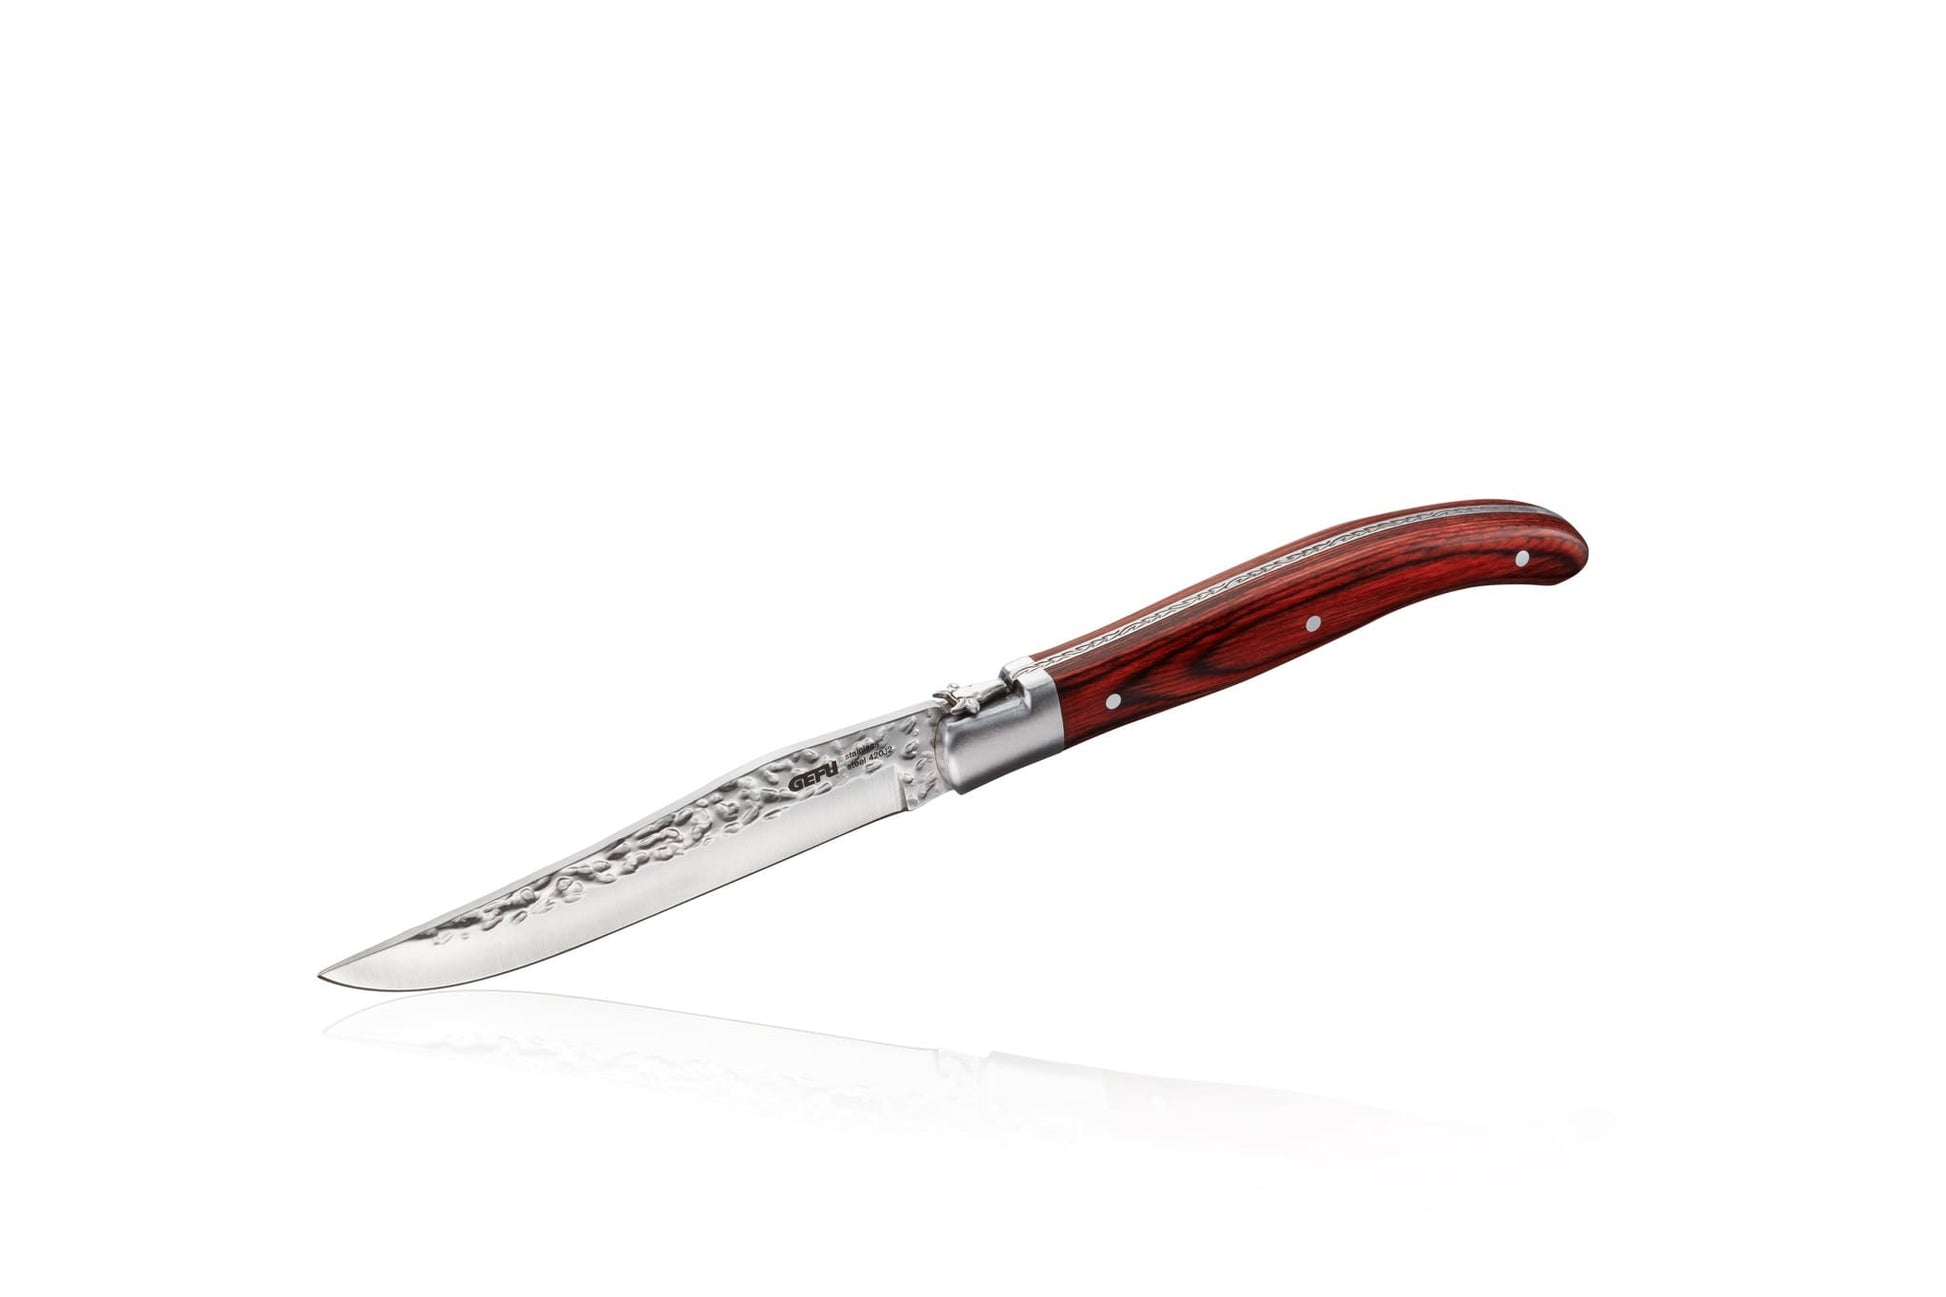 Steakknive RANCHO sæt  á 6 stk  Bøfknive i en fin fyrretræsæske med ergonomiske træhåndtag.  Uanset om det er roastbeef eller rib eye, skaber det glatte blad på bøfkniven det perfekte snit. Og efter brug finder de skarpe steakknive deres plads i en flot, praktisk trækasse, som også giver prikken over i'et i gave.